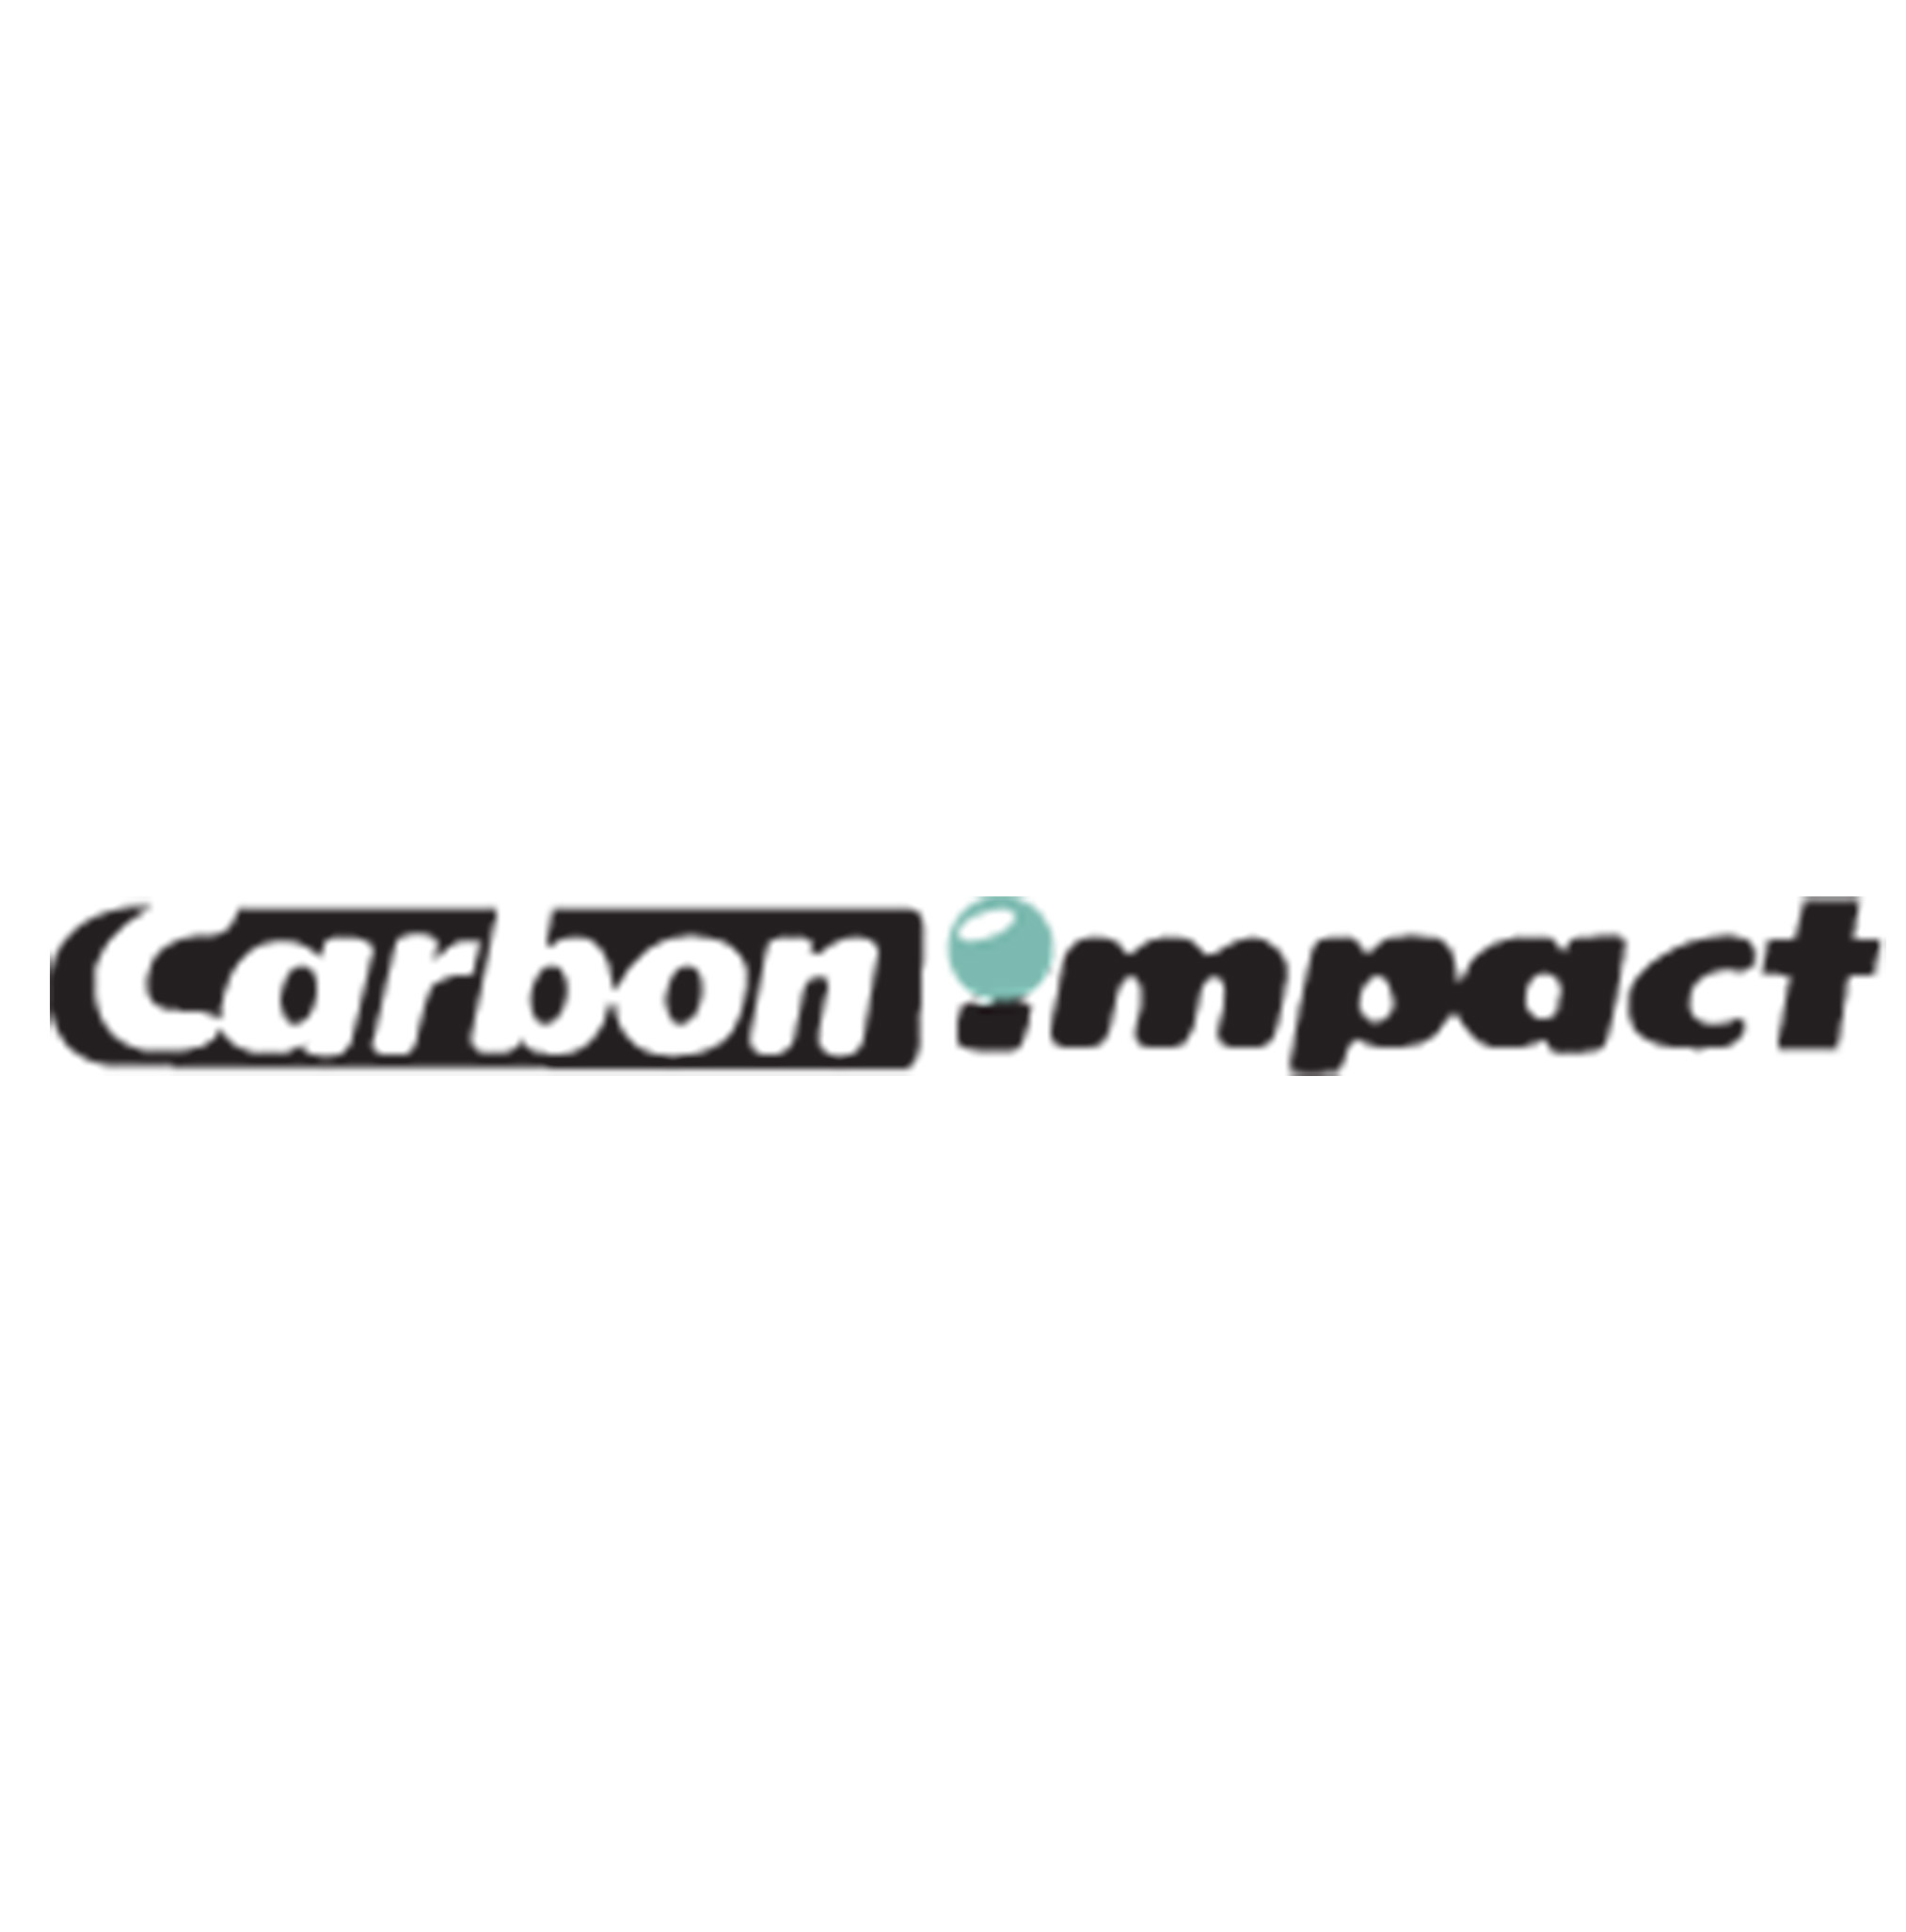 A_Carbon-impact